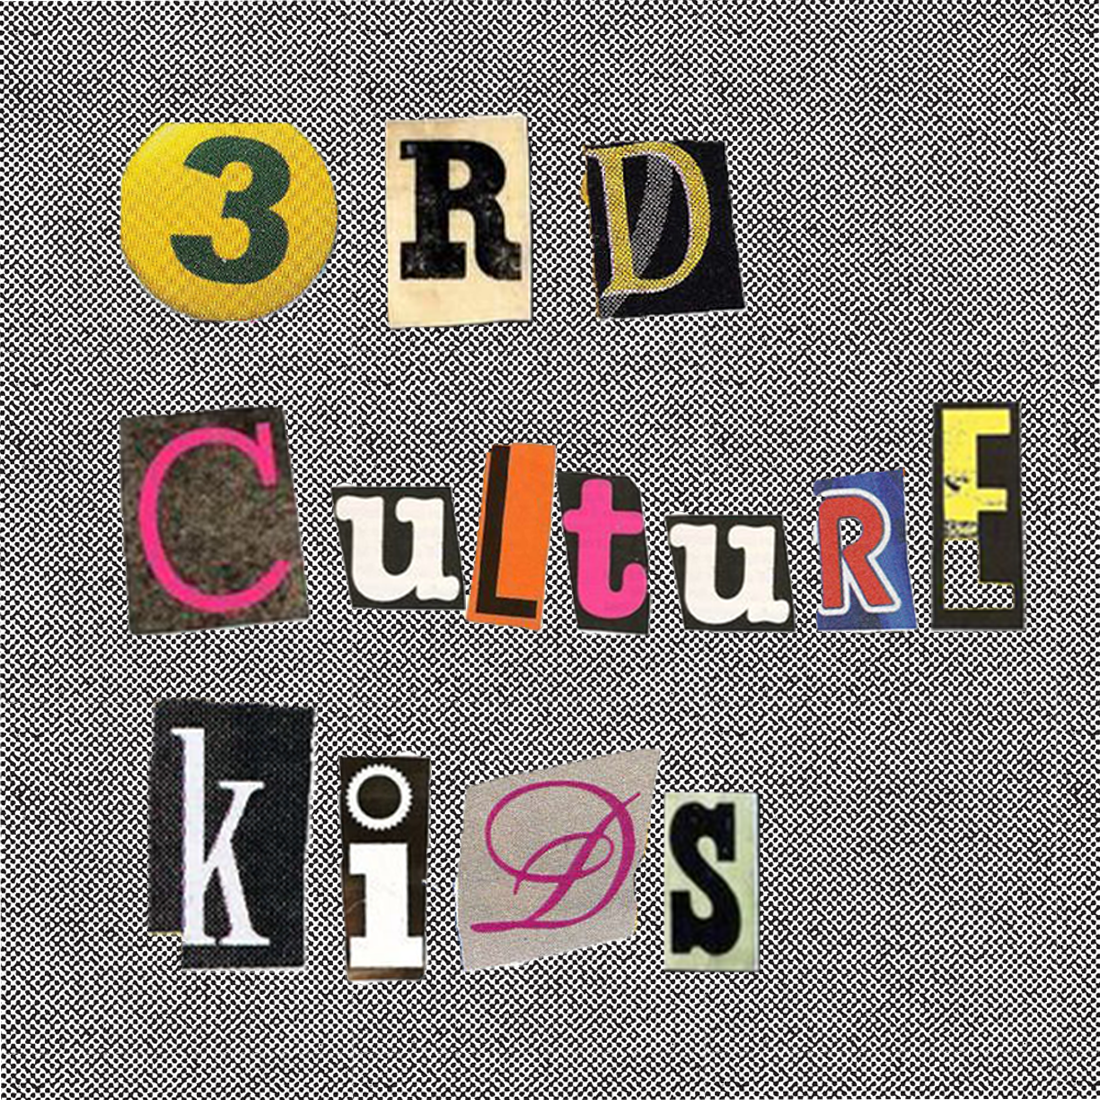 3rd Culture Kids